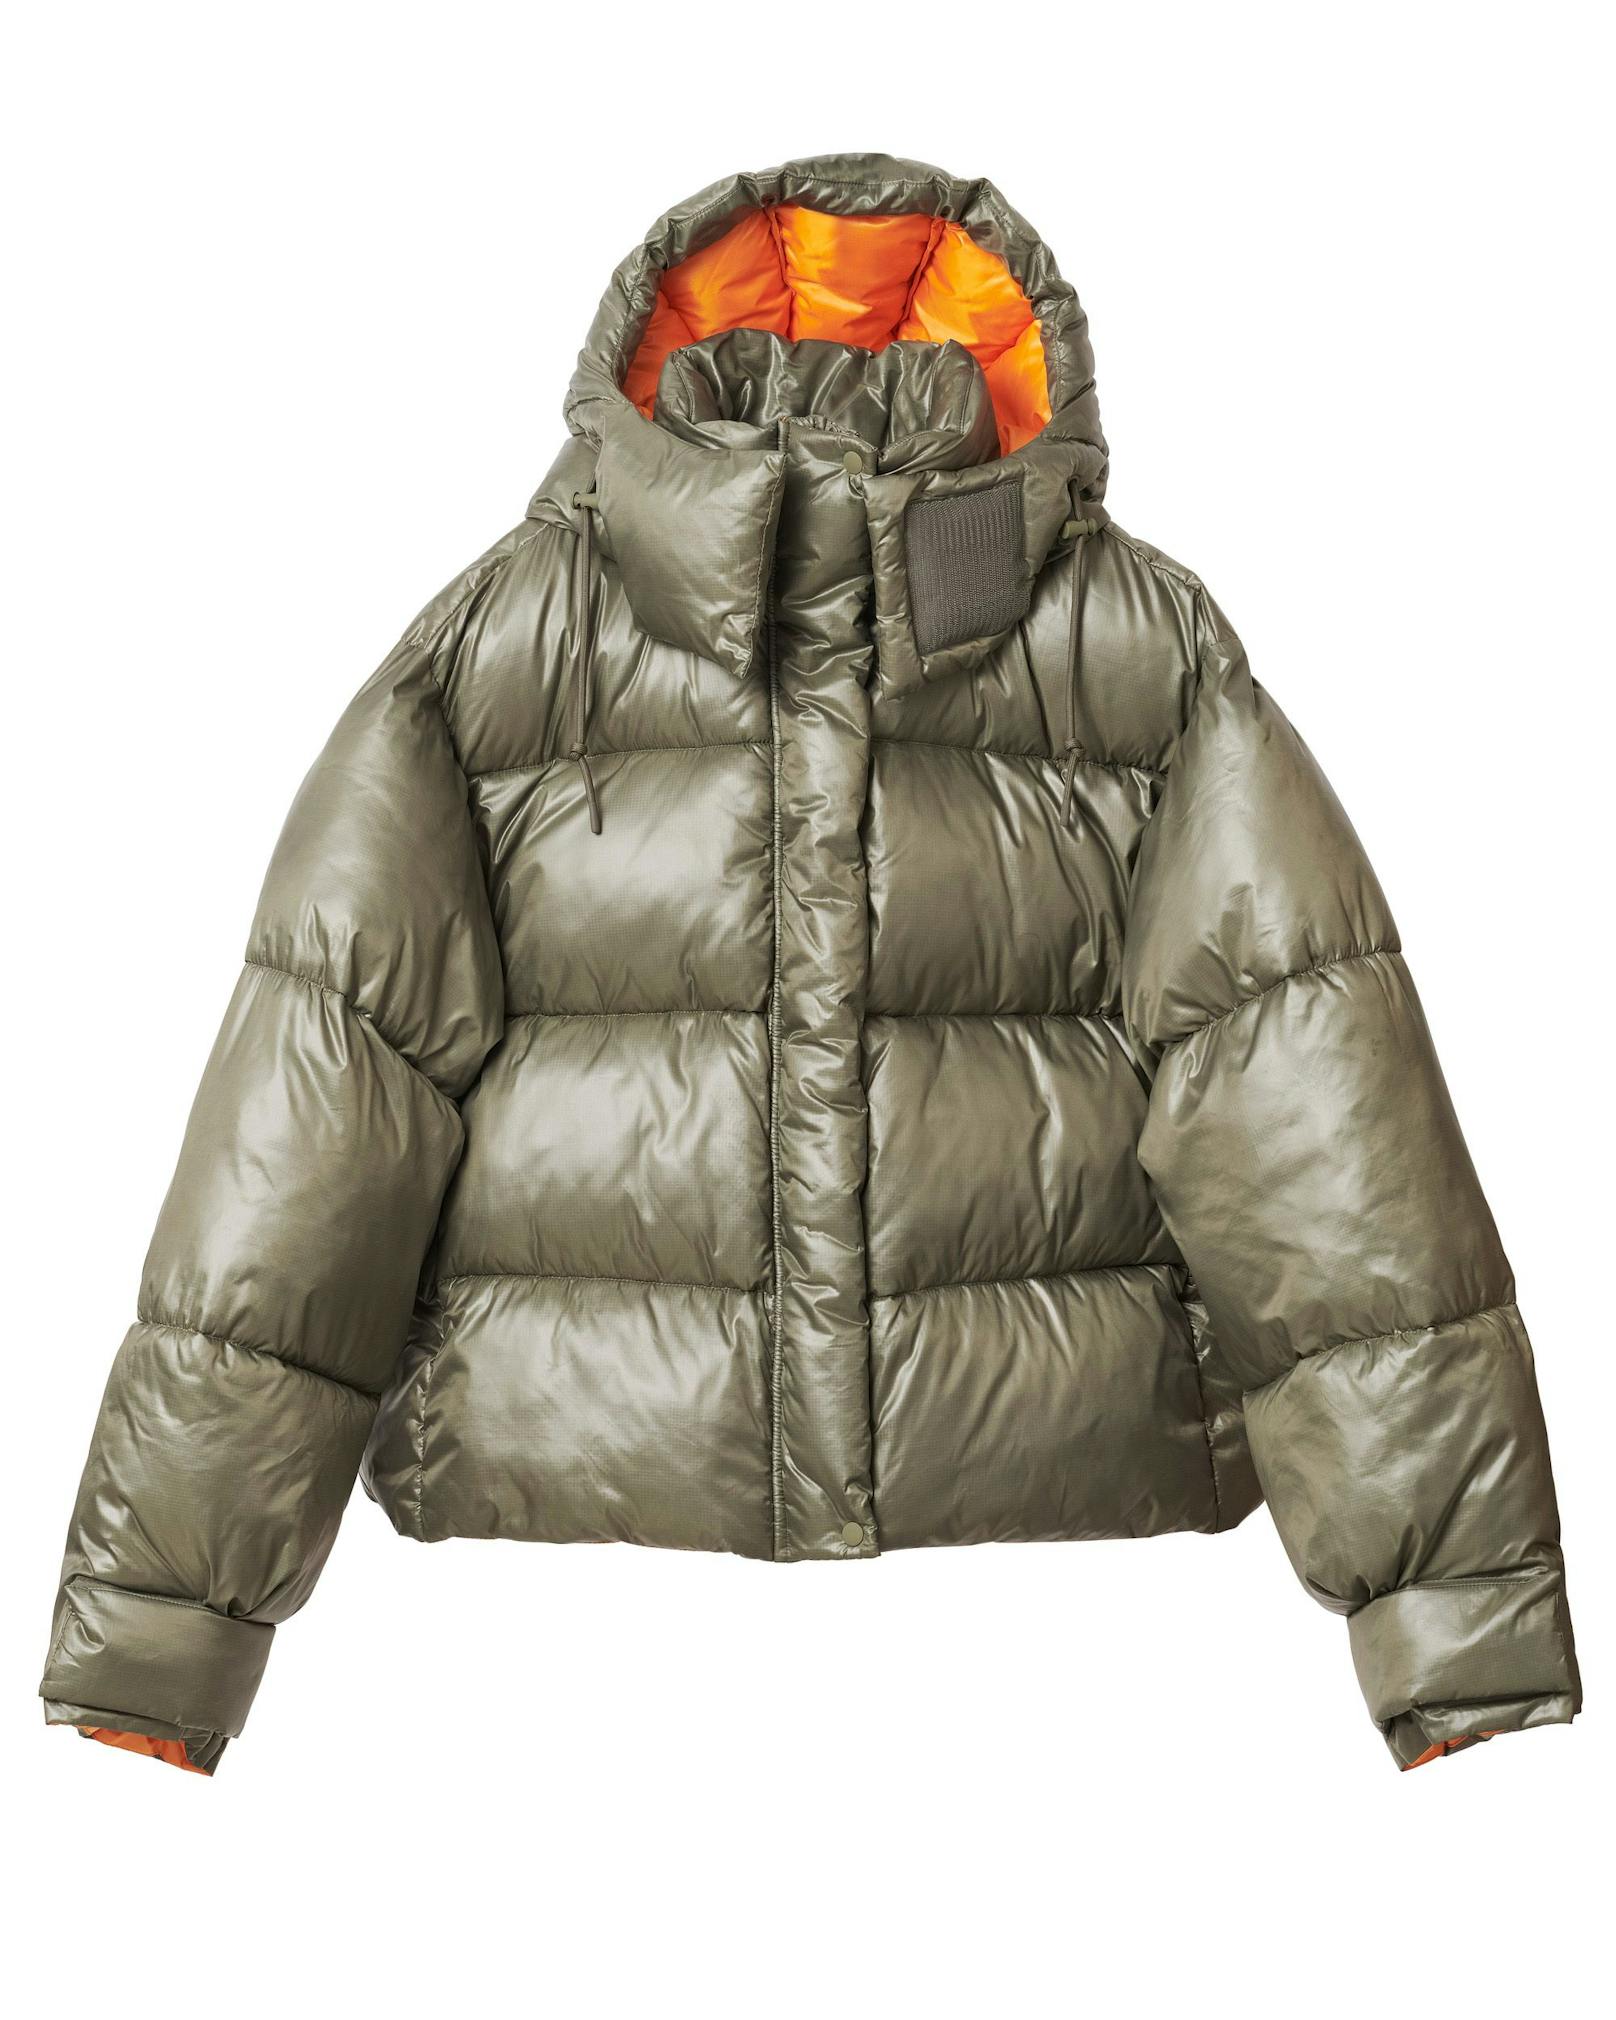 Eine Daunenjacke, die einen garantiert auch bei den frostigsten Temperaturen warm hält. Außen Militärgrün und innen mit einem sommerlichen Orange ausgestattet. Preis: 149 Euro.